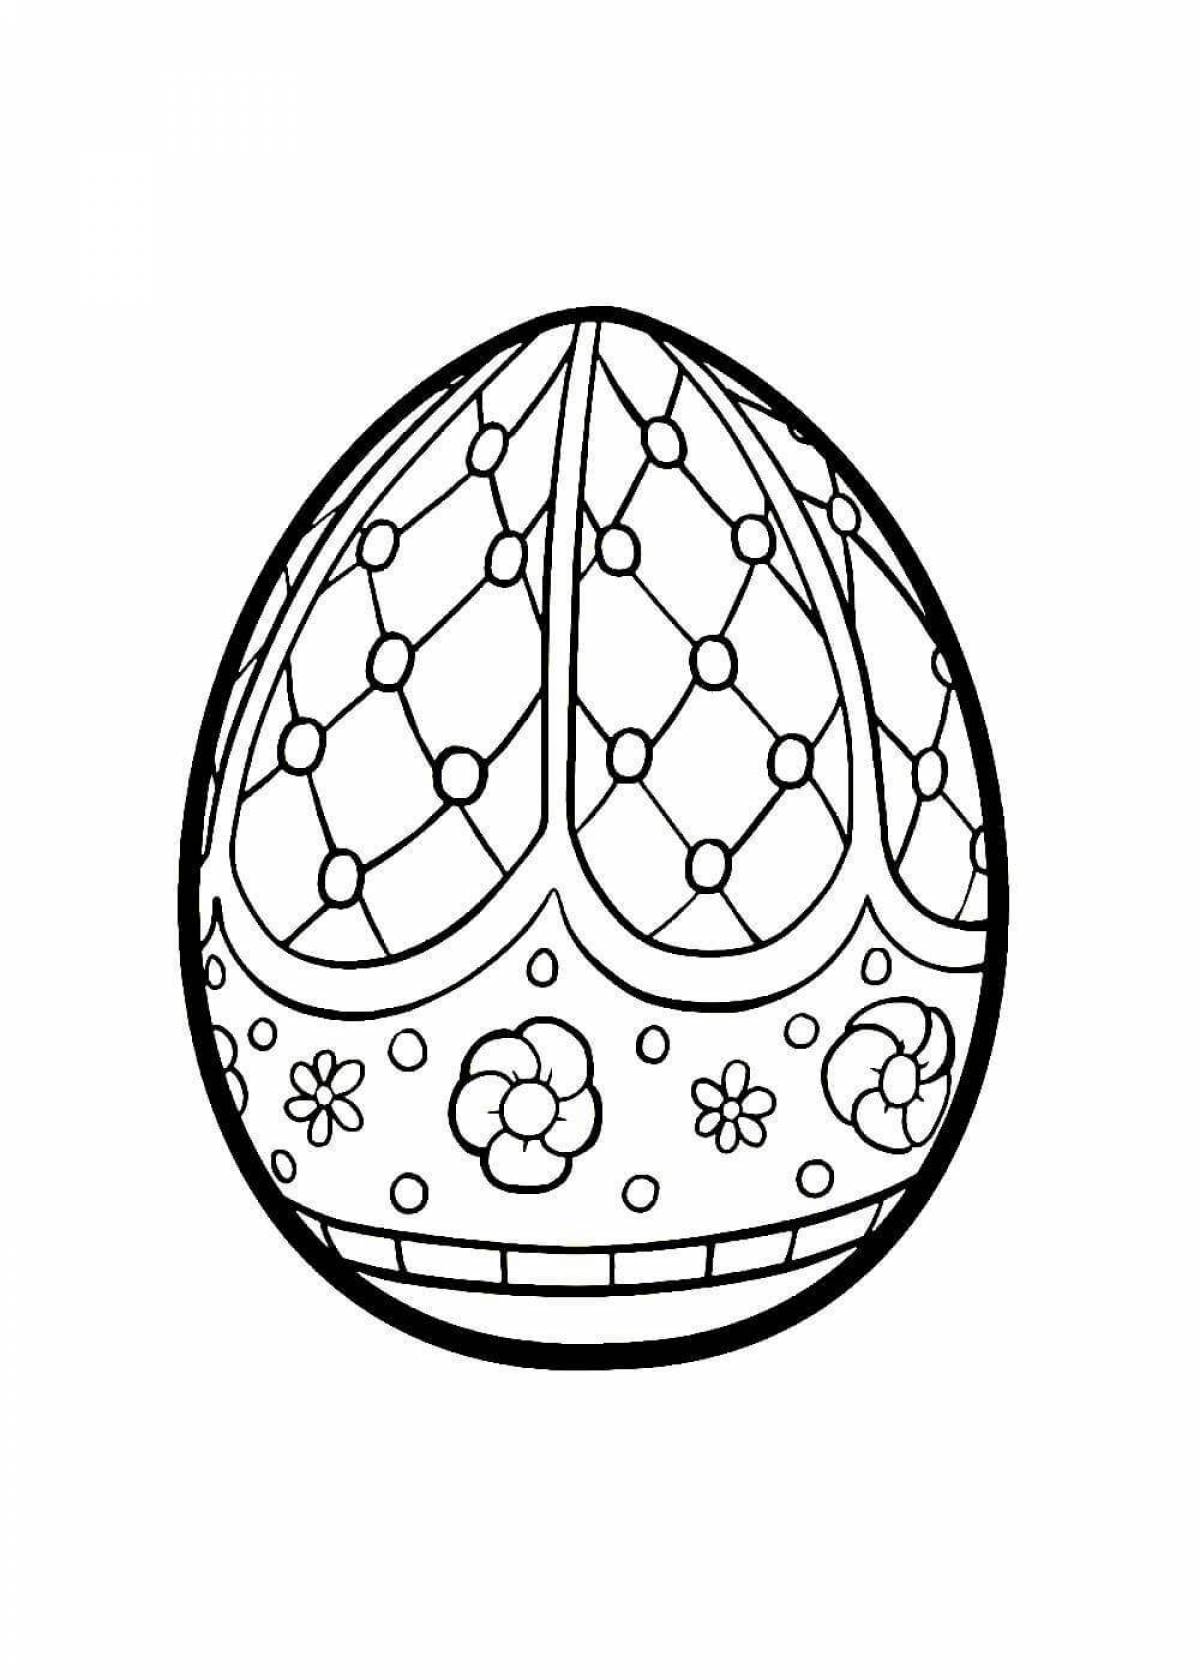 Художественная раскраска пасхальных яиц